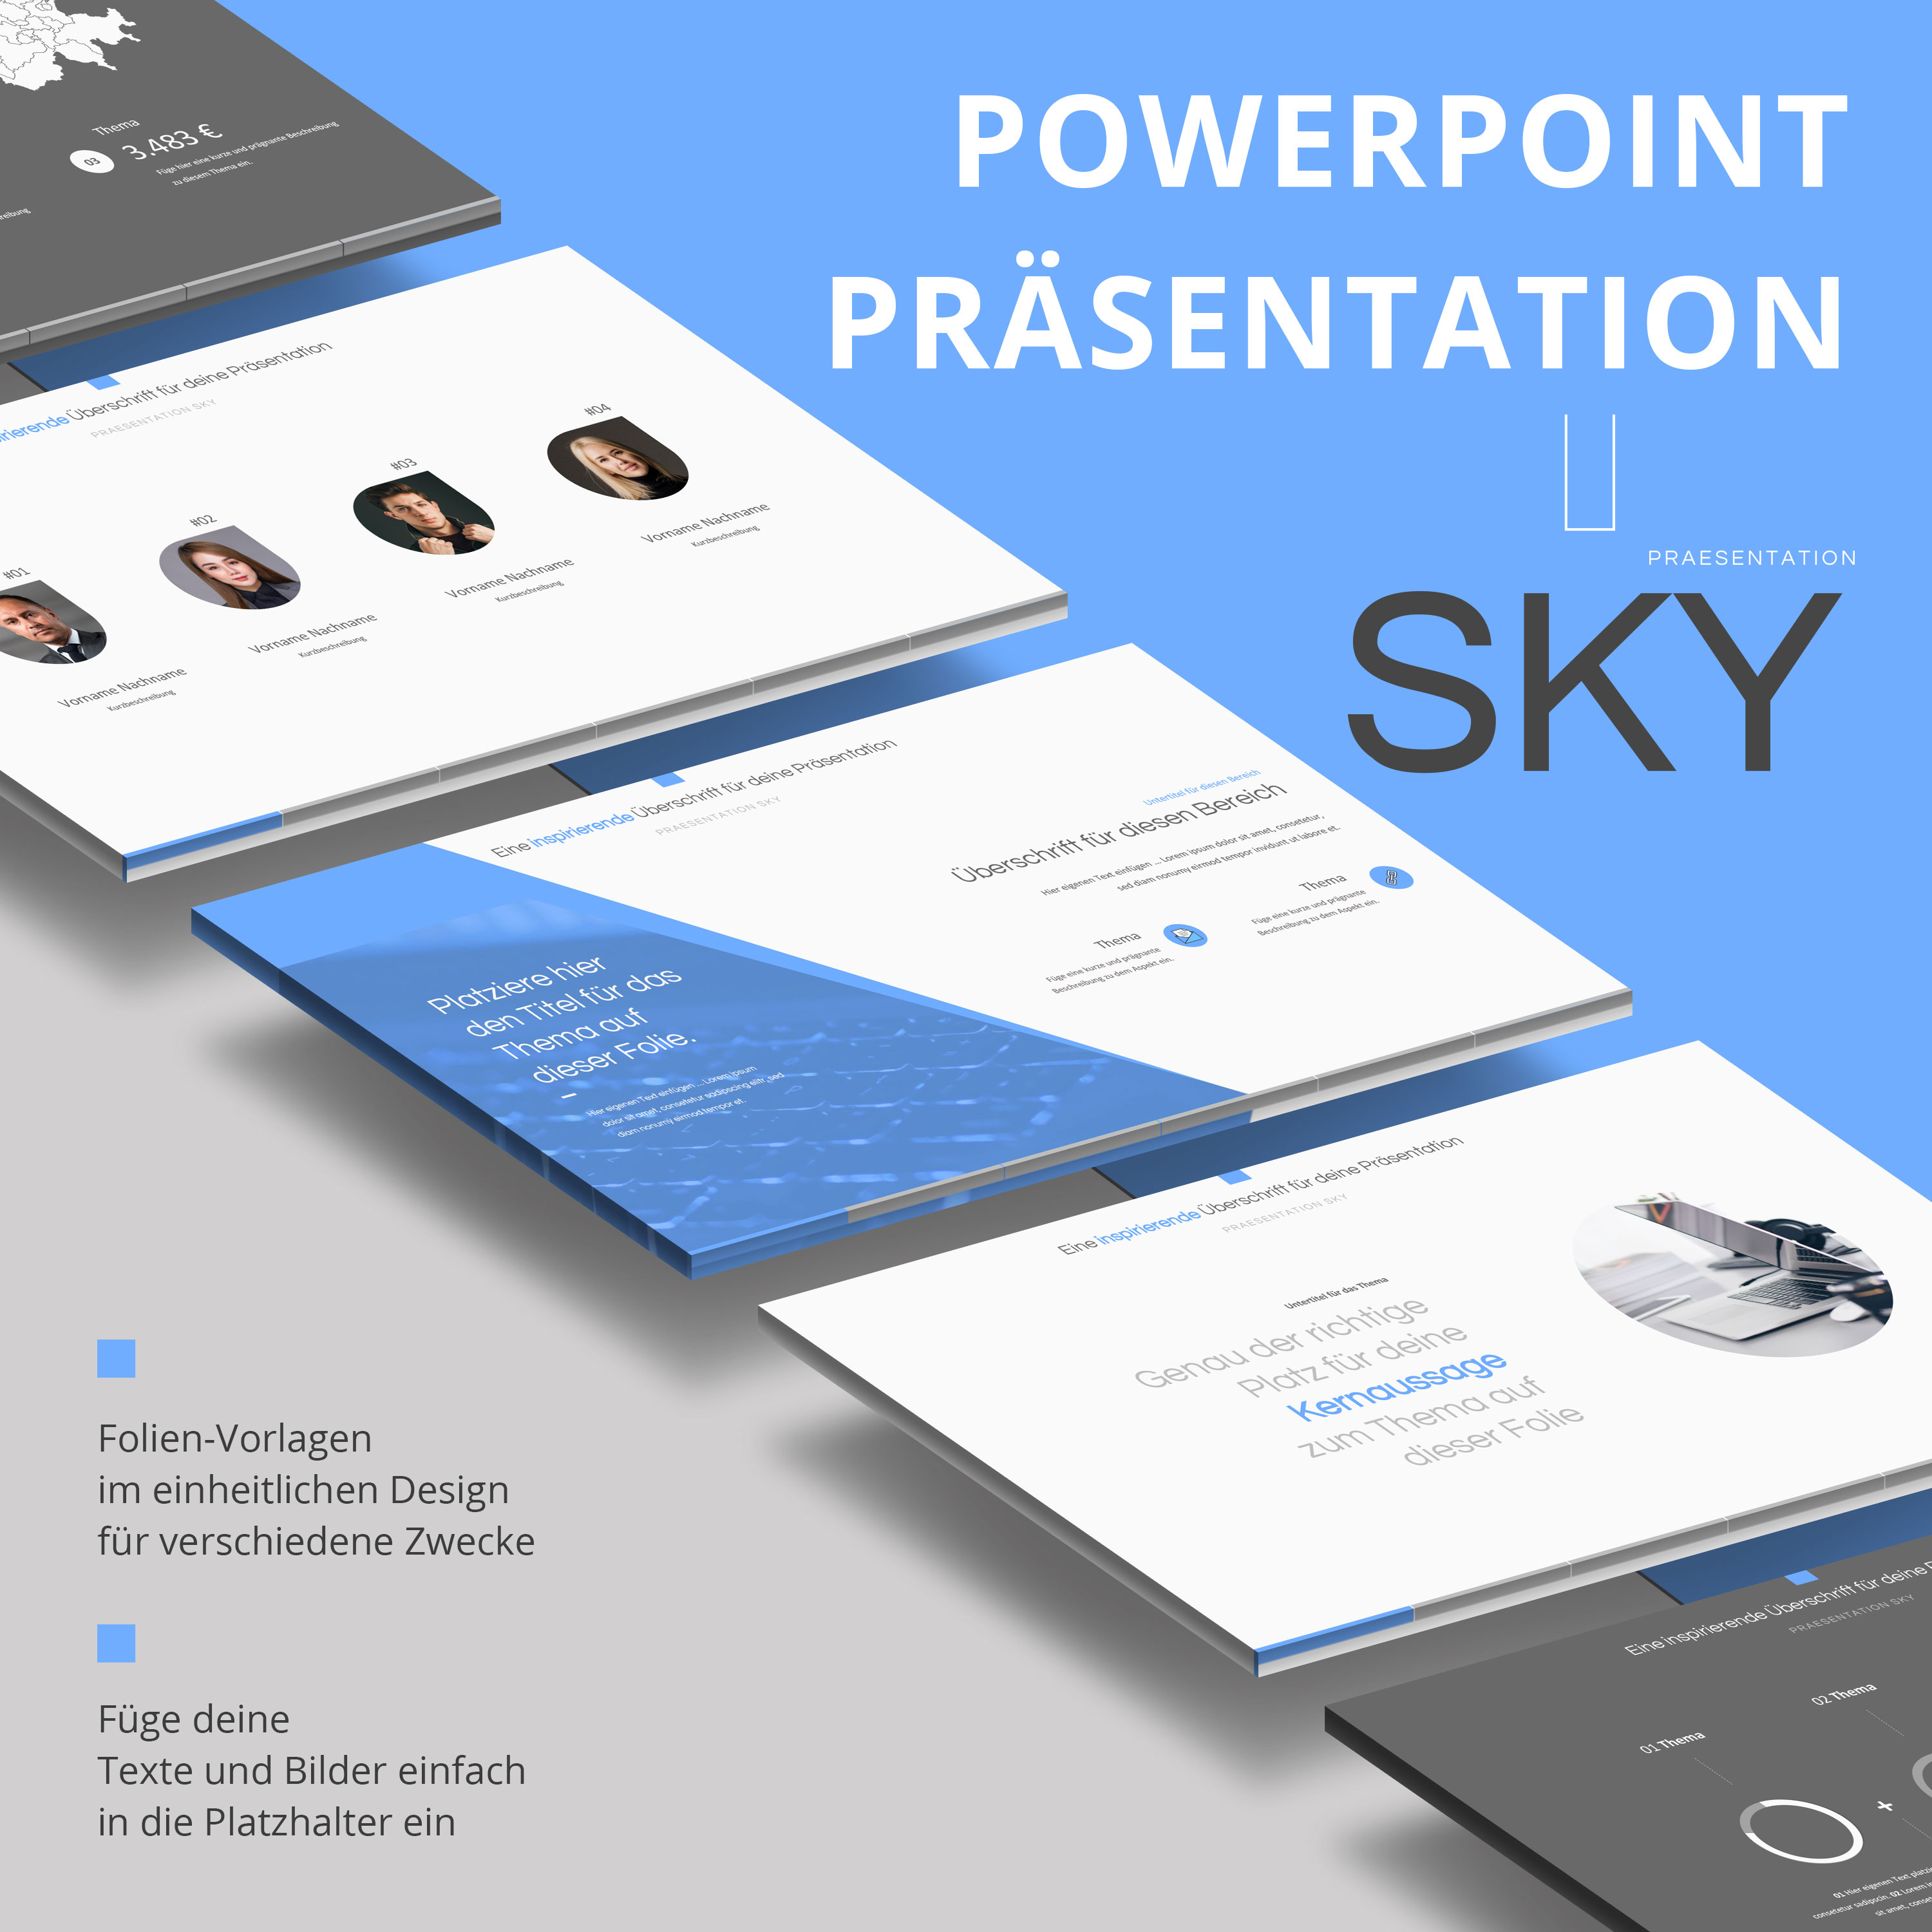 PowerPoint Design-Vorlage Sky, Beispielfolien